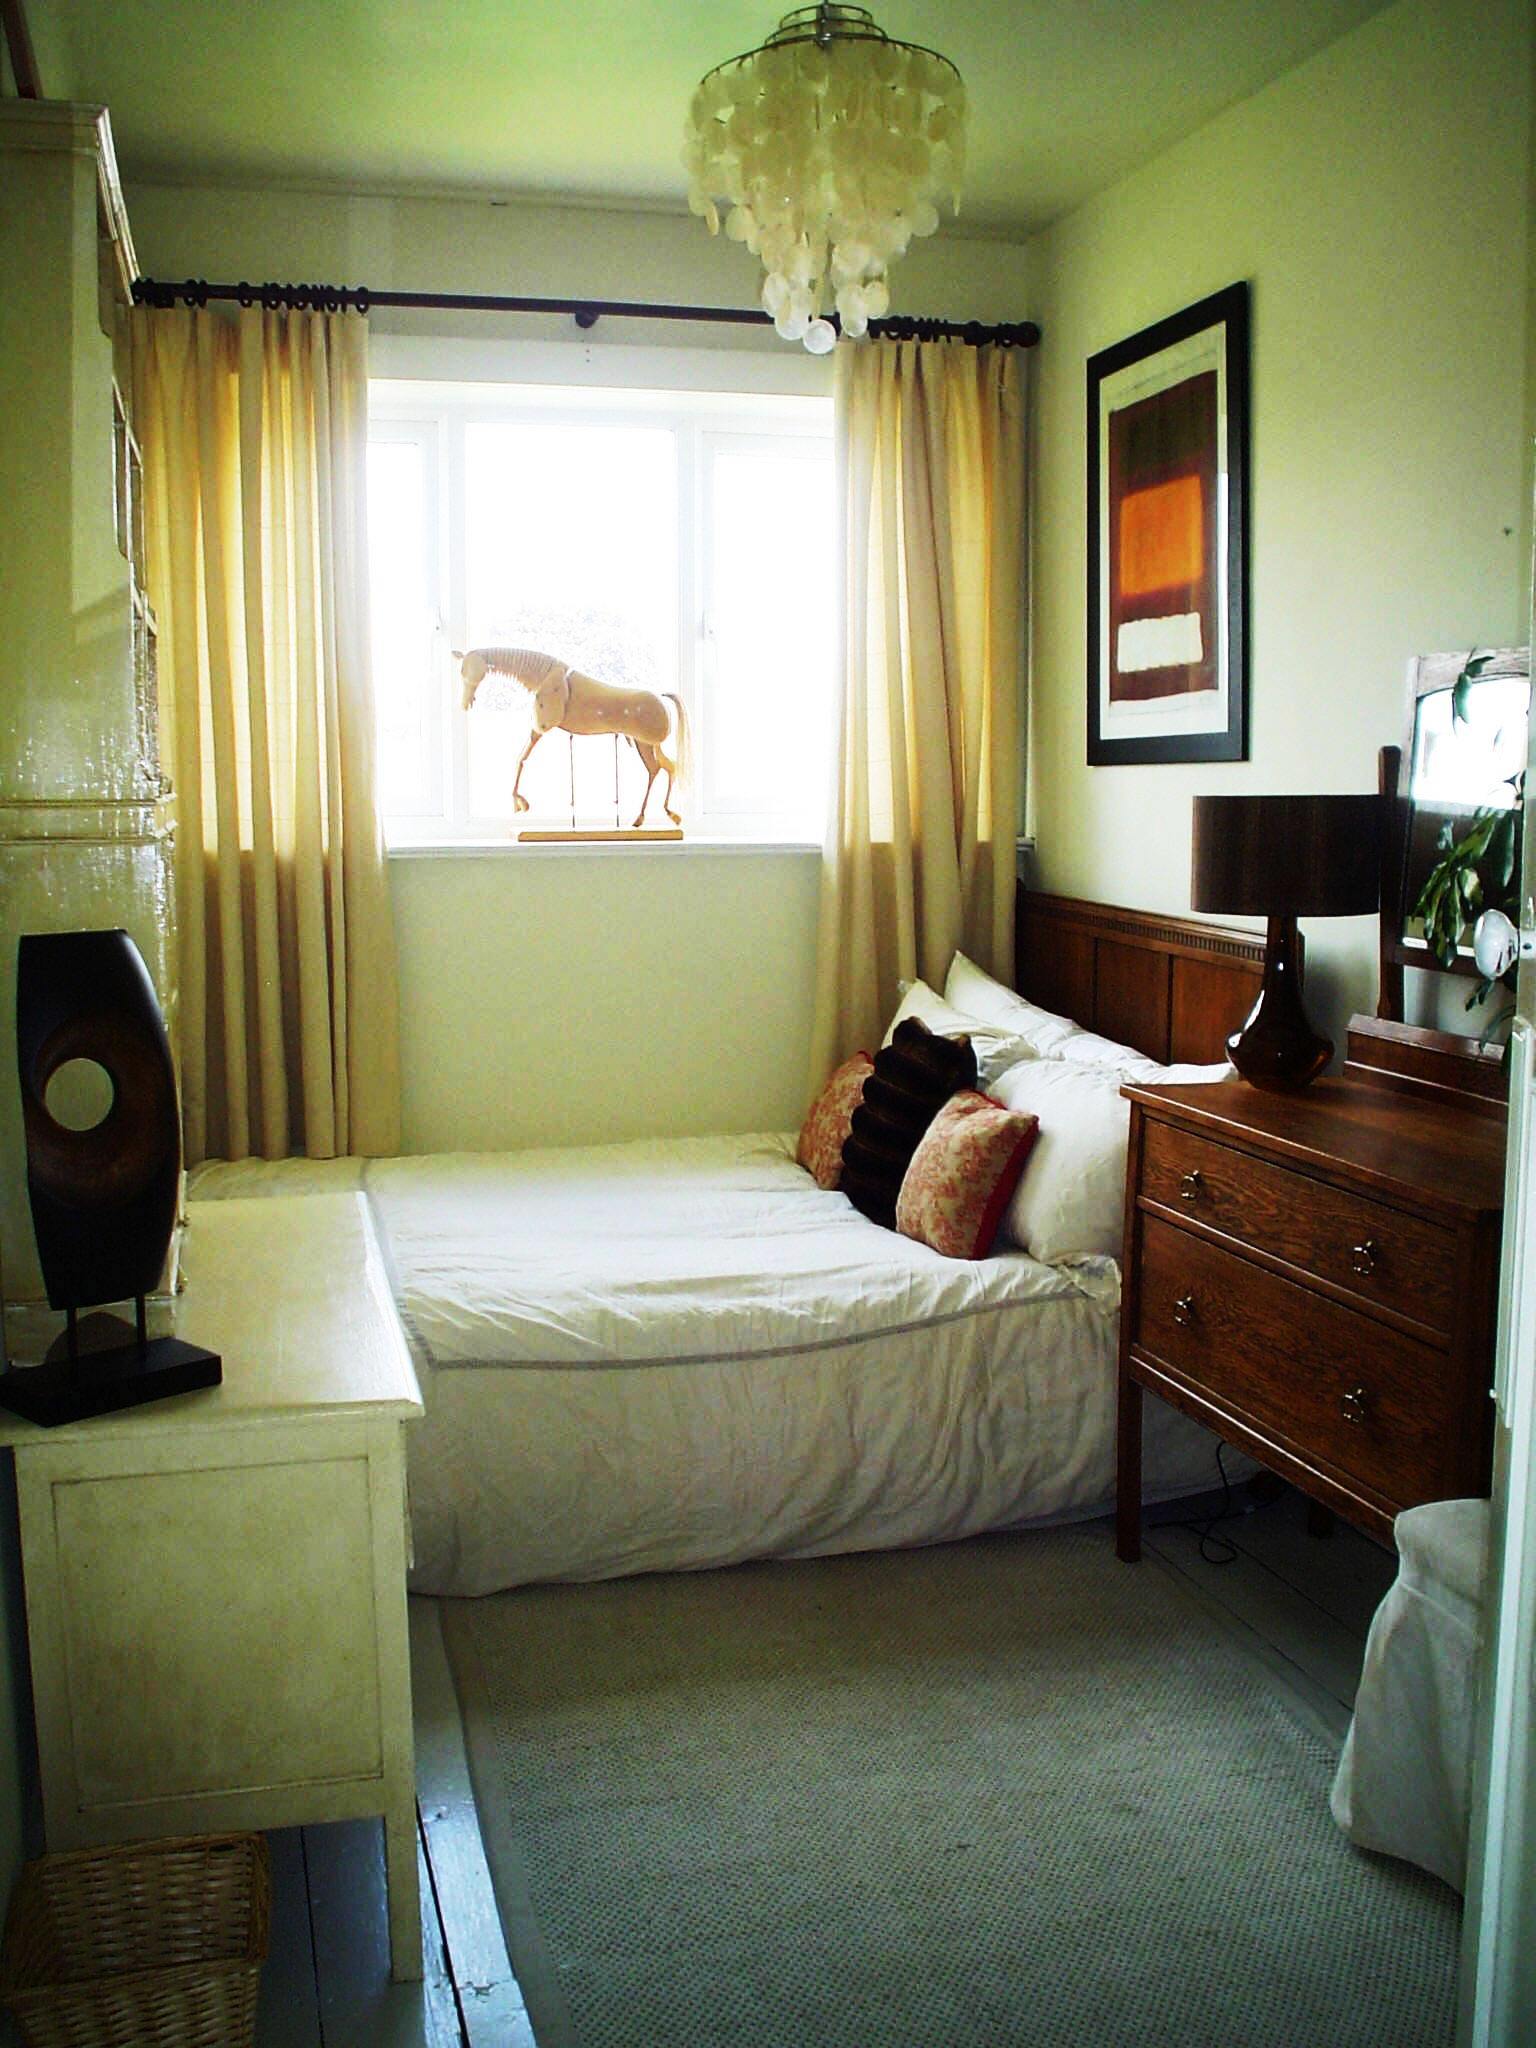 interior bedroom simple designs source